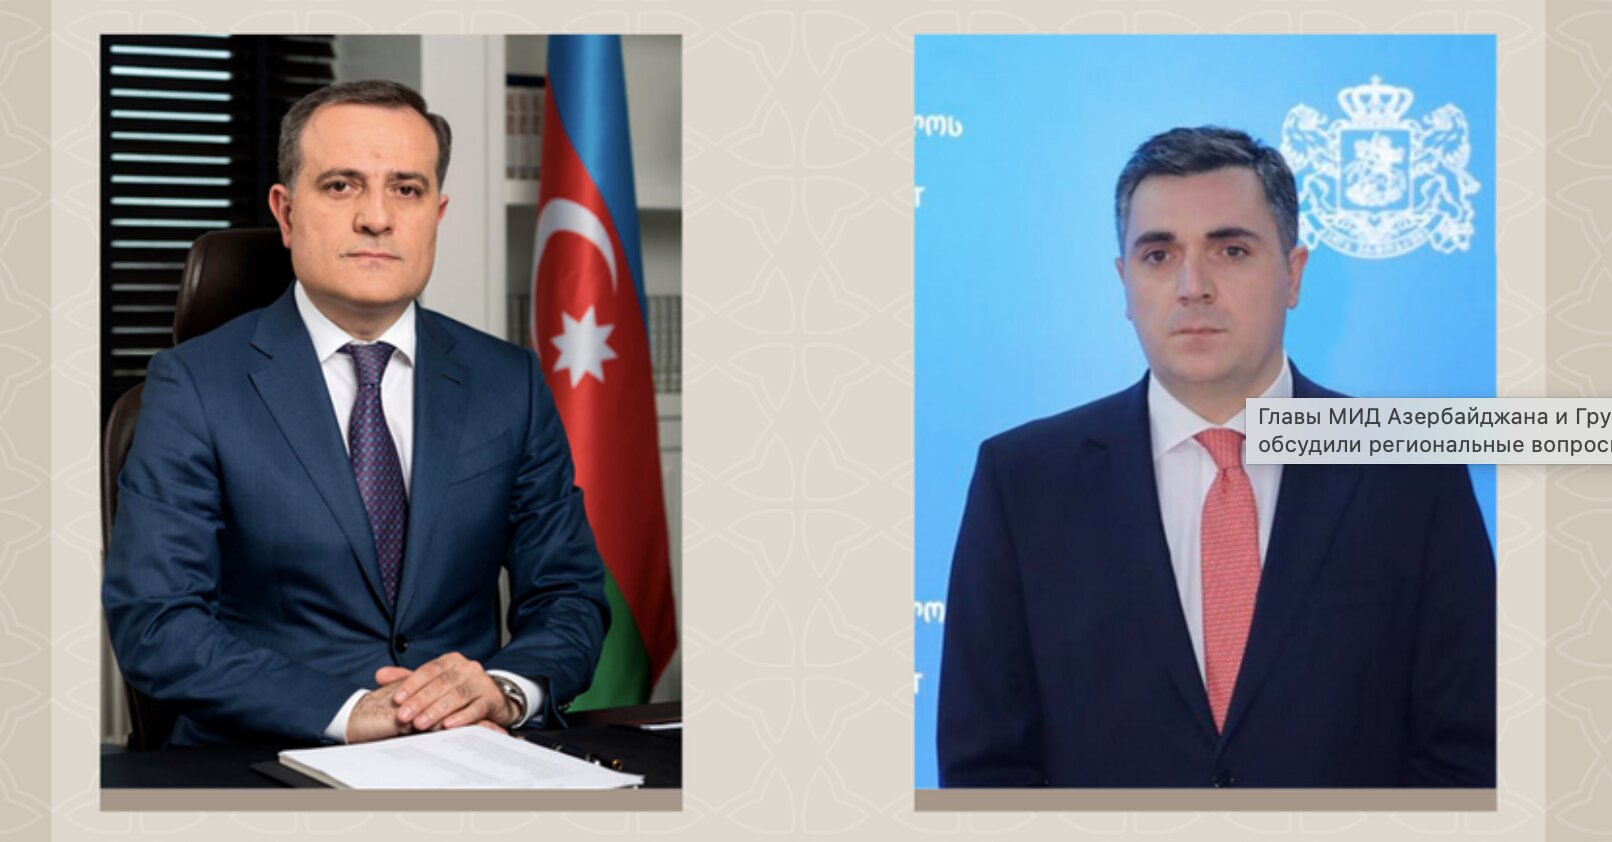 Главы МИД Азербайджана и Грузии обсудили региональные вопросы